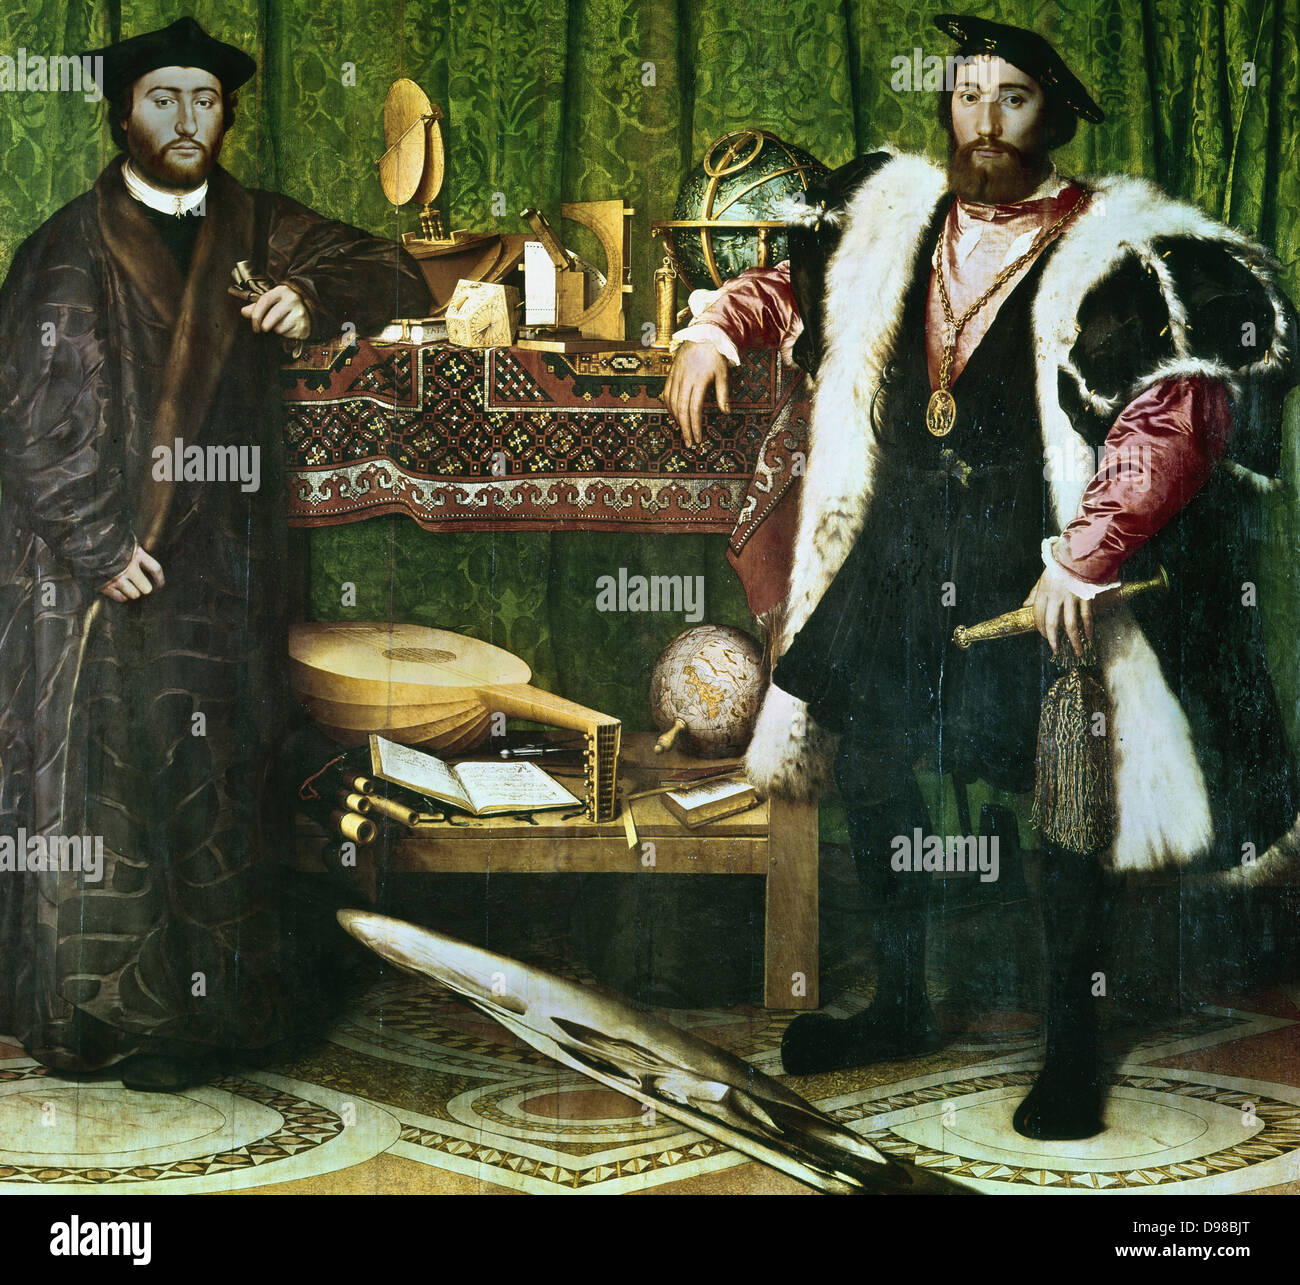 Gli Ambasciatori, , (1533): Jean de Dinteville (1504-1555) e Georges de Selve (1508-1551), Vescovo di Lavaur, ambasciatori presso la corte di Enrico VIII d'Inghilterra. Hans Holbein il Giovane (1497-1543) tedesco-born artist. Le condizioni prima di effettuare la pulizia. Foto Stock